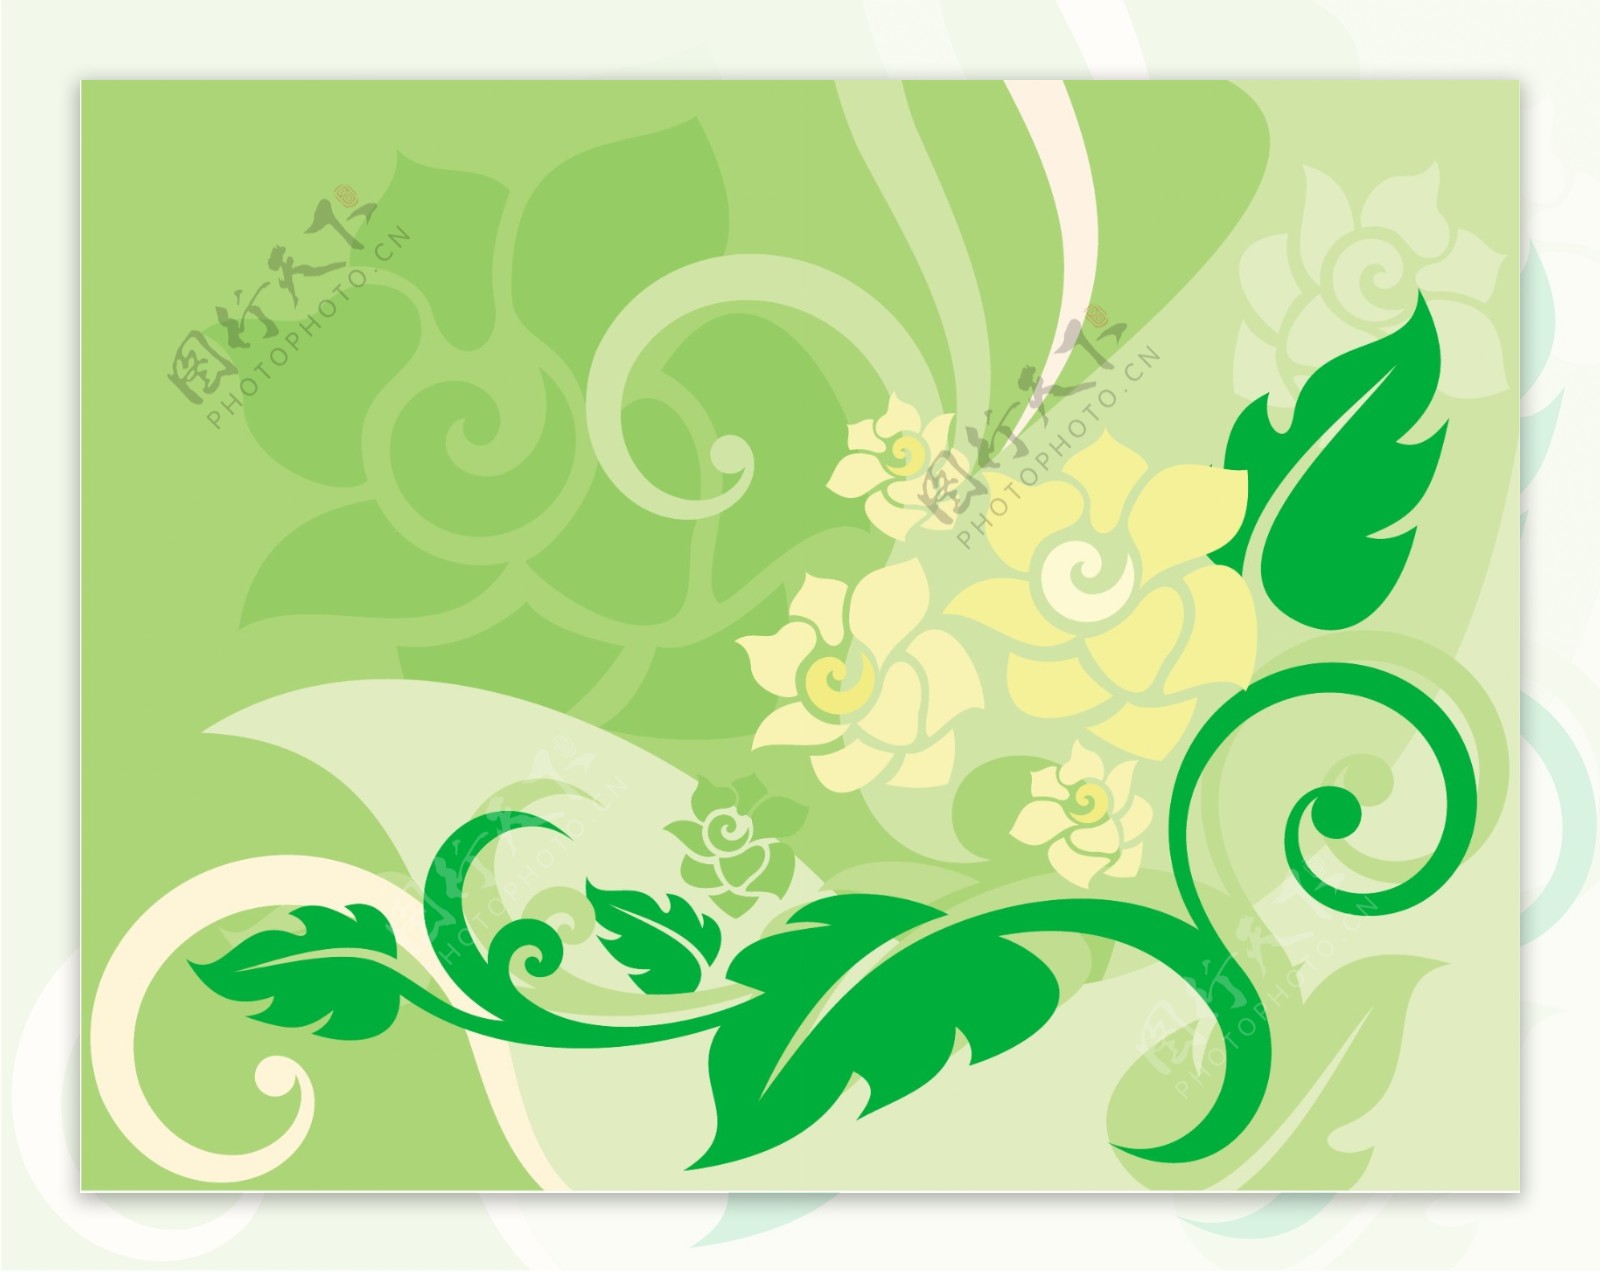 绿色花纹背景设计